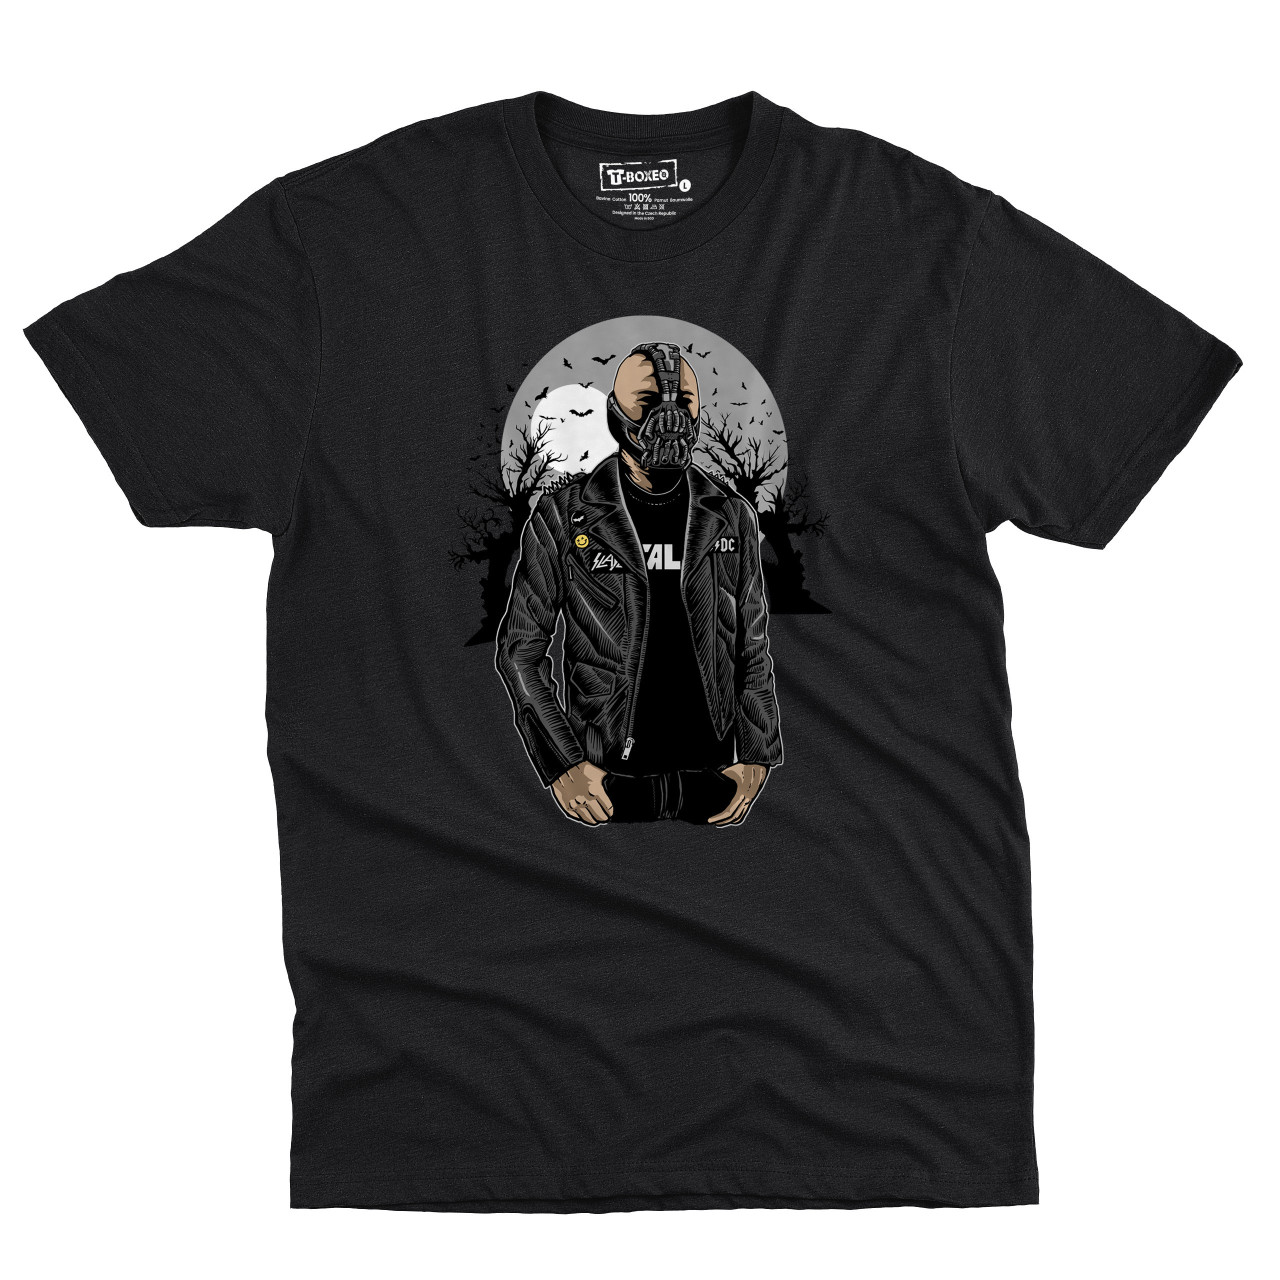 Pánské tričko s potiskem “Bane za úplňku"